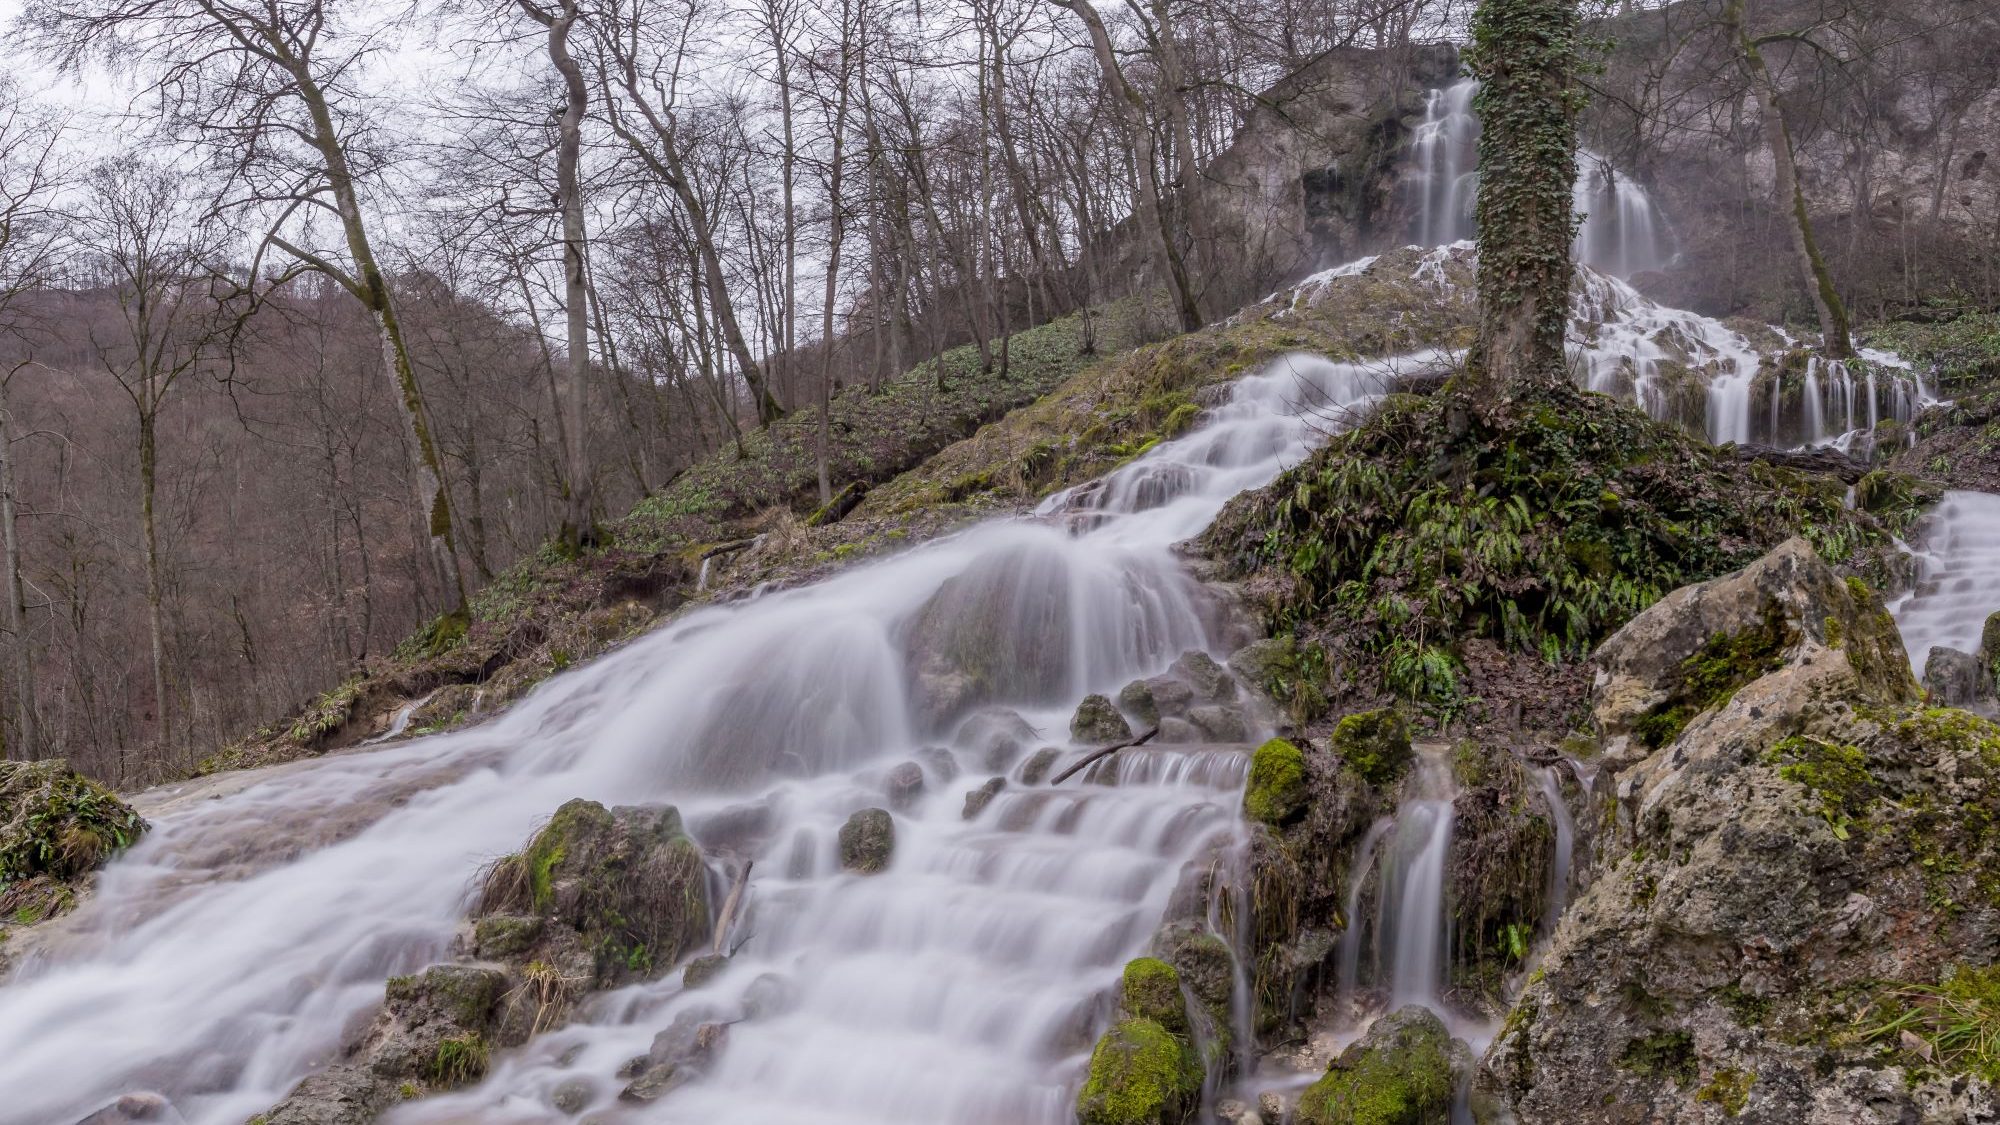 Uracher Wasserfall im Wald